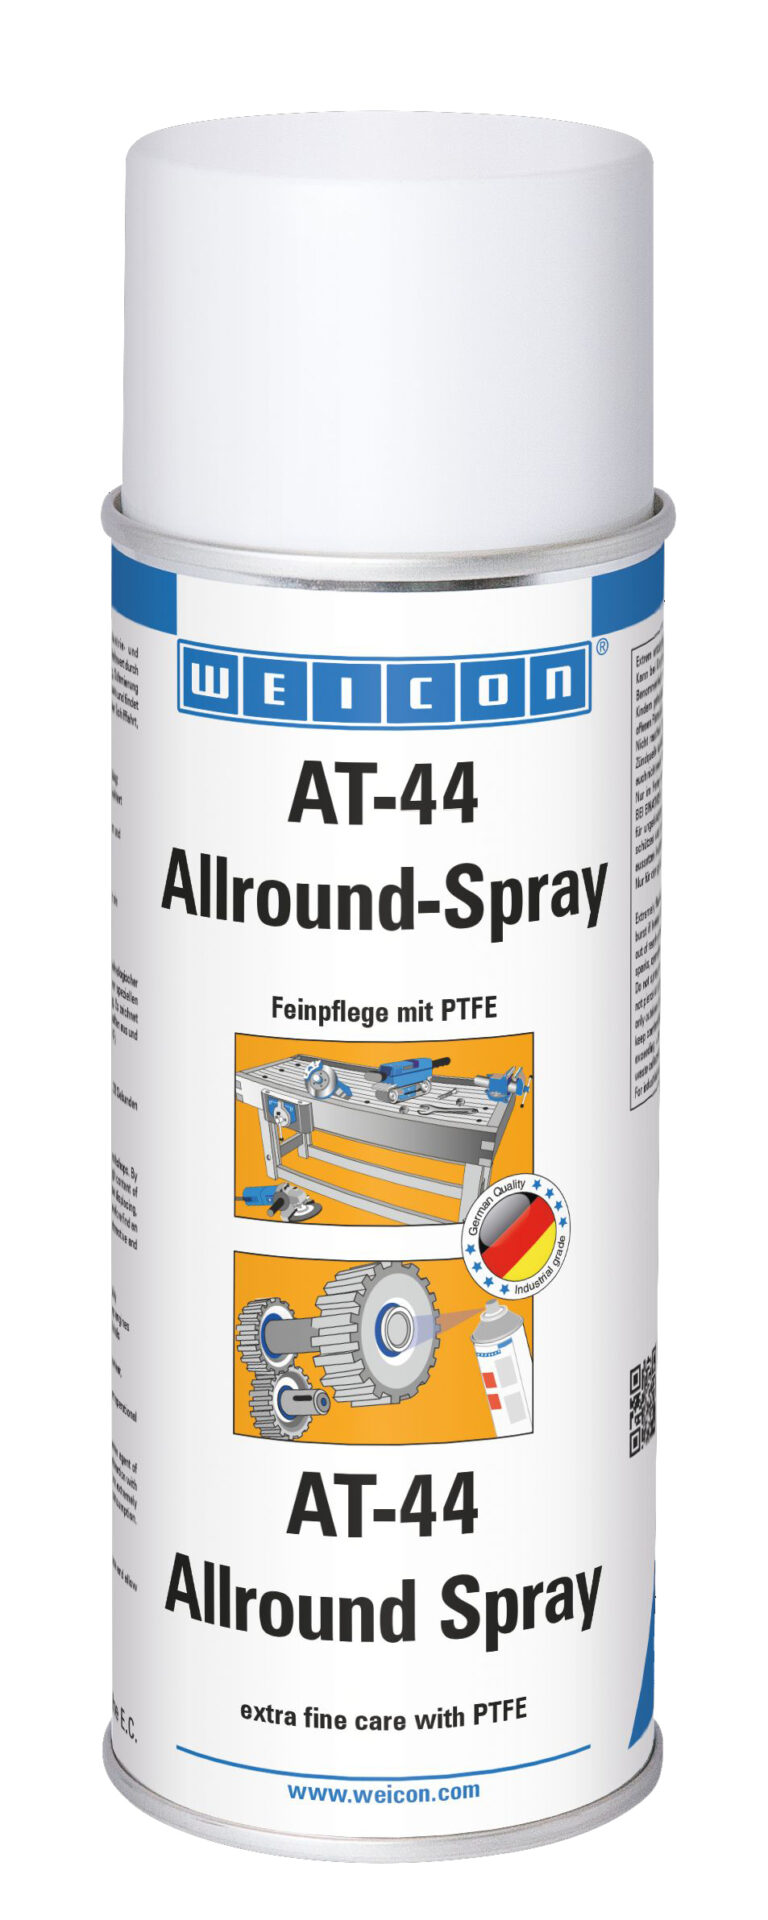 AT-44 Allroundspray